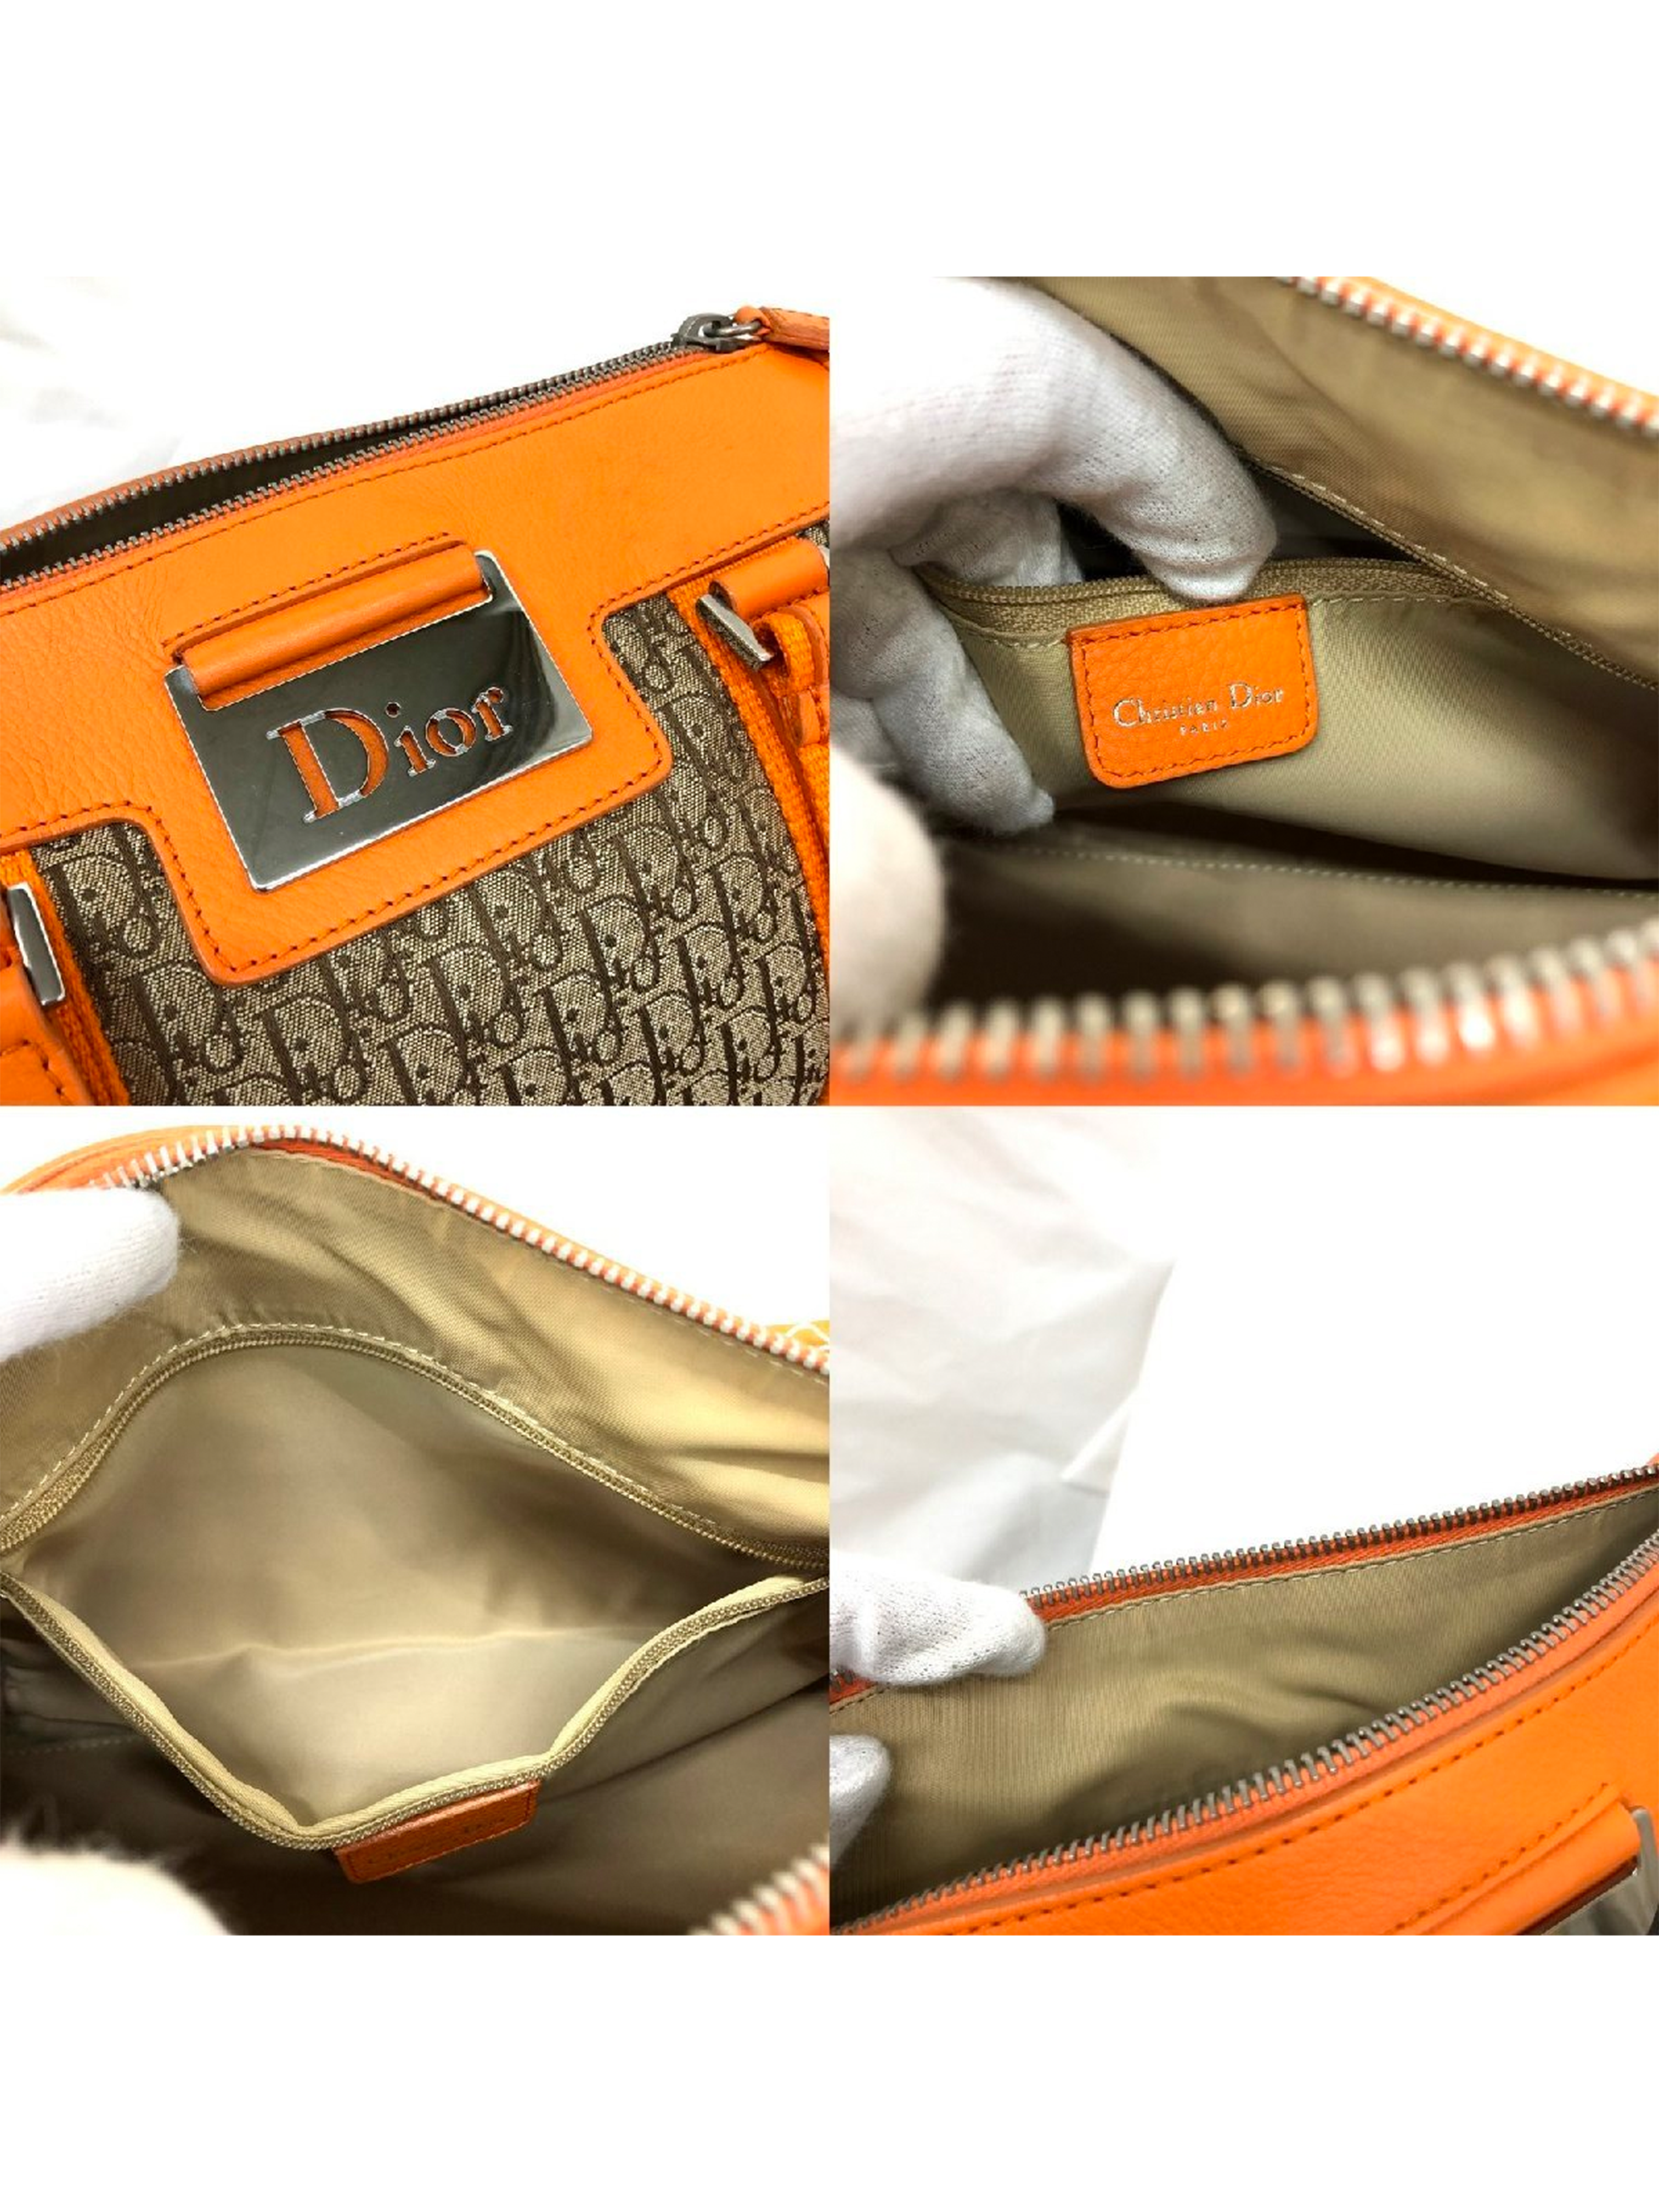 Christian Dior 2000s Orange Leather Trotter Bag